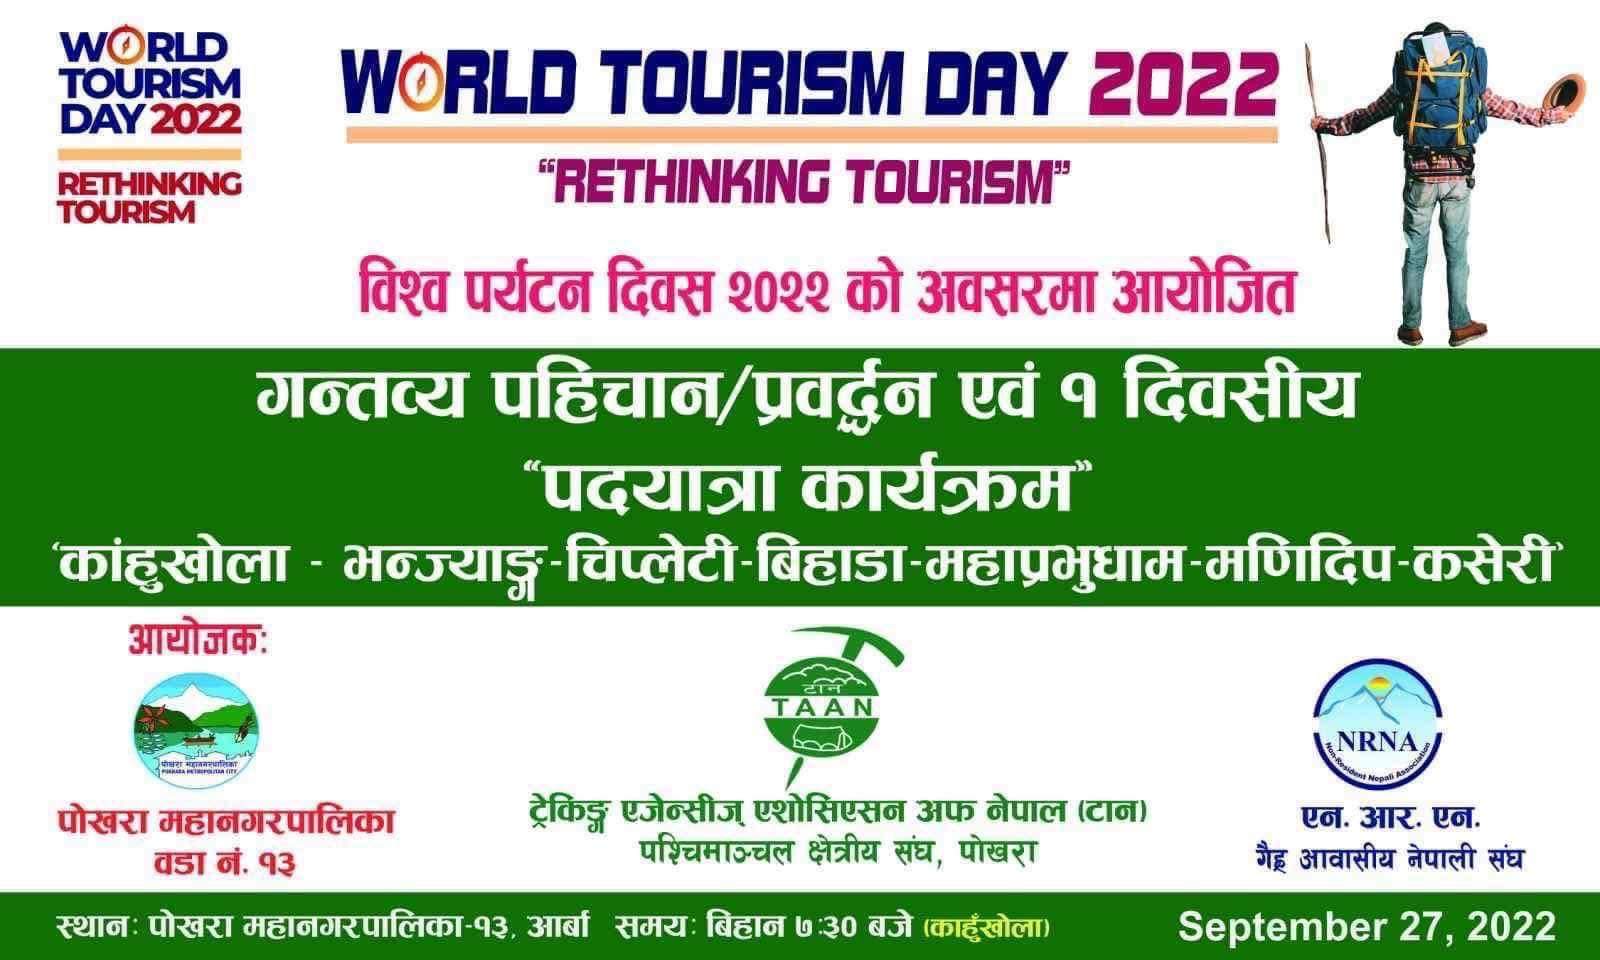 विश्व पर्यटन दिवसको अवसरमा एनआरएनए लगायत संघसंस्थाले पदयात्रा कार्यक्रम गर्दै